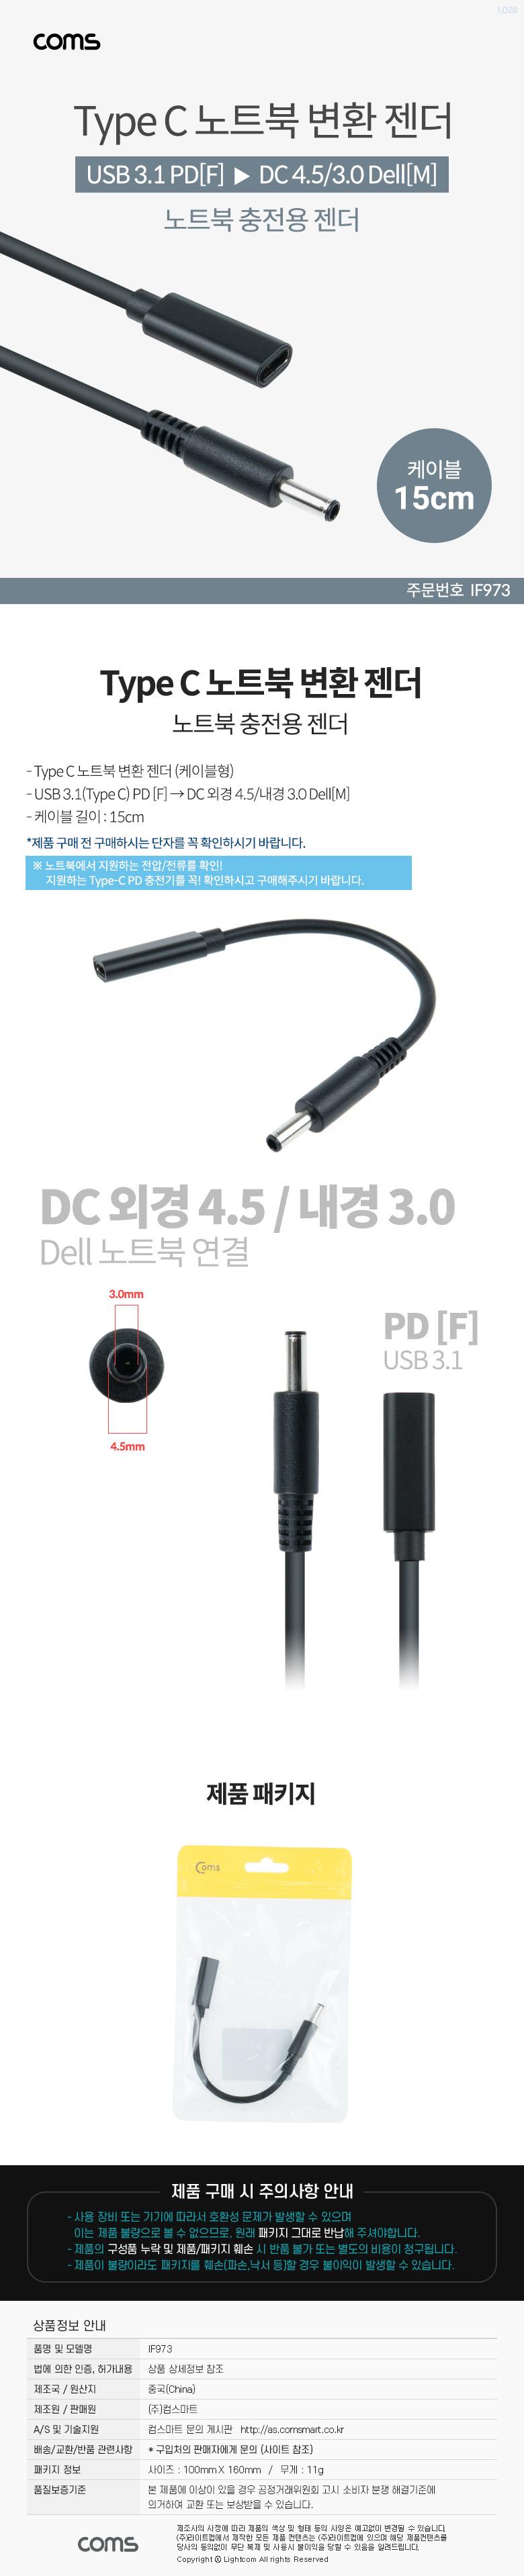 Coms USB 3.1 Type C Ʈ ȯ  ̺ 15cm CŸ PD to DC 4.5 3.0 Dell  Ʈ  Ʈ   Ʈ Ʈ ȯ ƮϺȯ ȯ